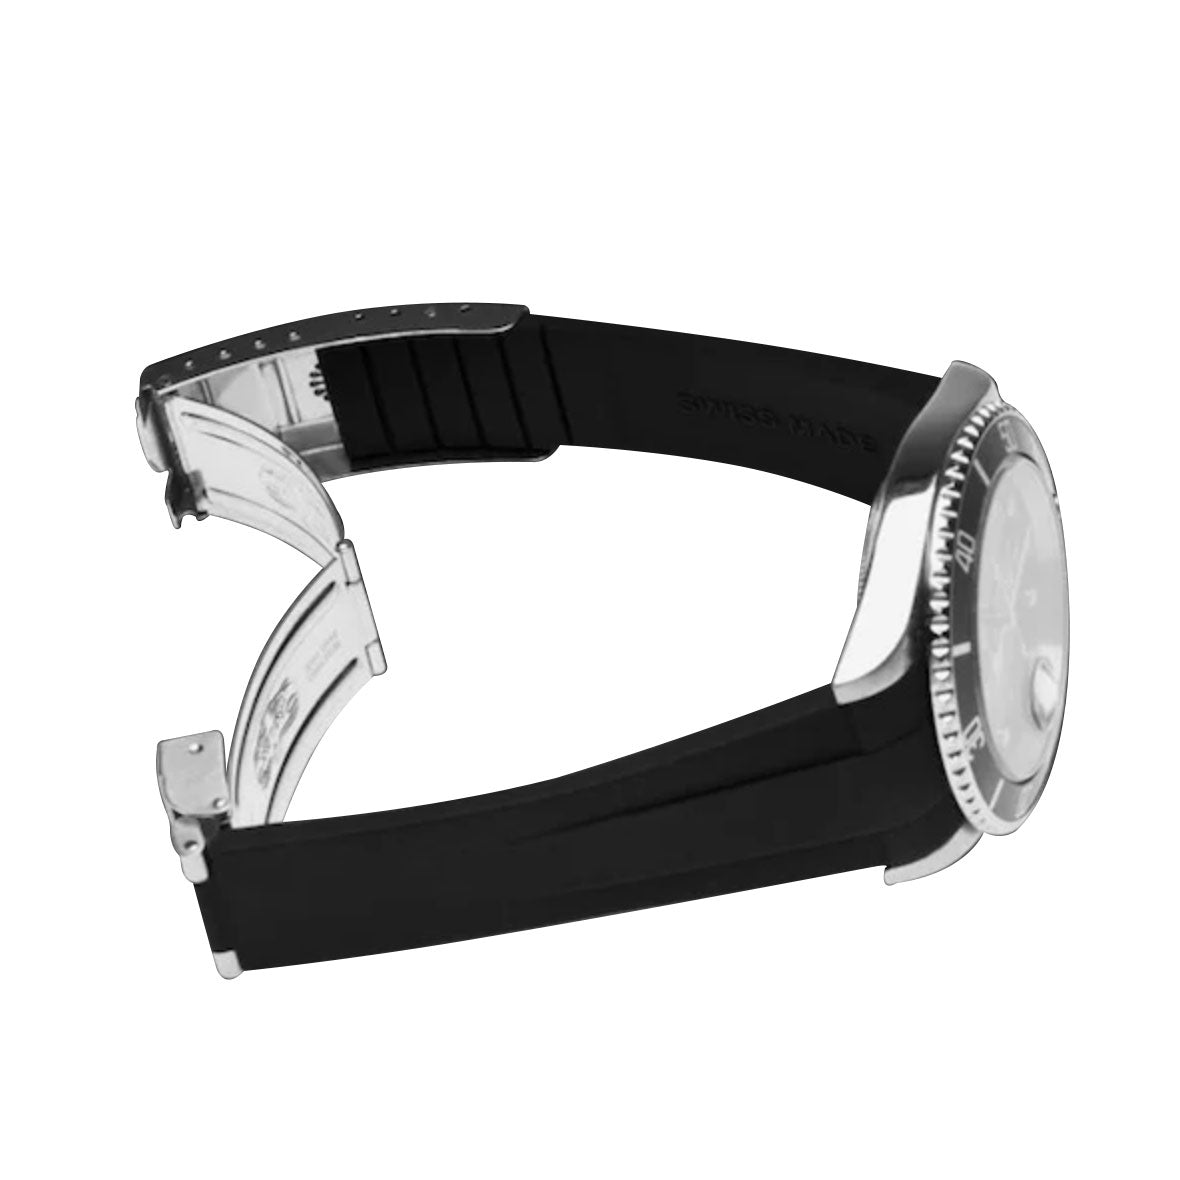 Rolex Oyster Bracelet - Rubber B - Bracelet caoutchouc pour Oyster Perpetual / Datejust 31mm - Série classique - watch band leather strap - ABP Concept -